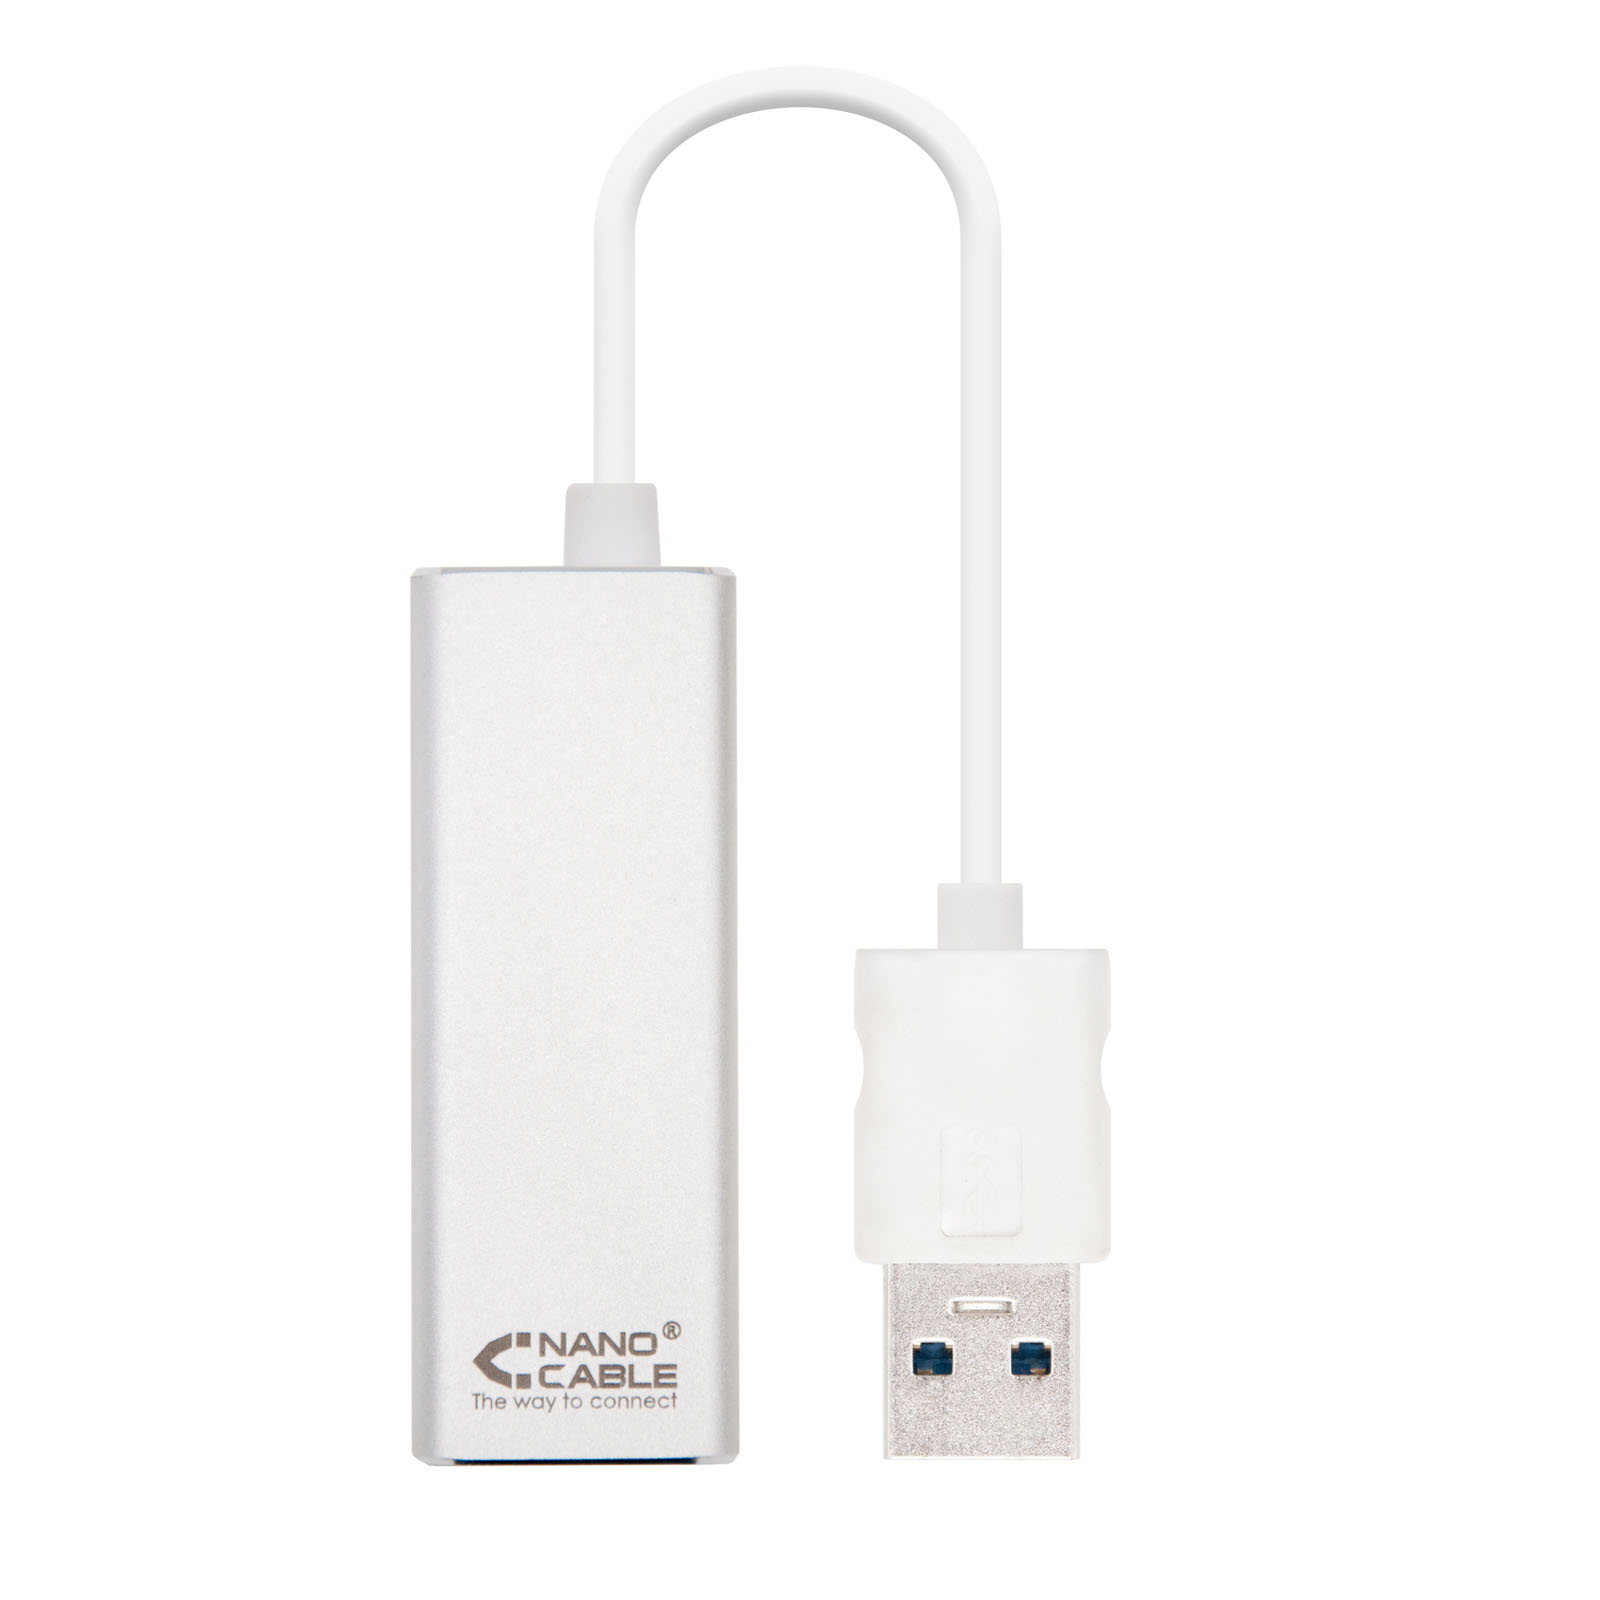 Convertisseur Nanocable USB 3.0 vers Gigabit Ethernet 10/100/1000 Mbps - 15cm - Couleur Aluminium